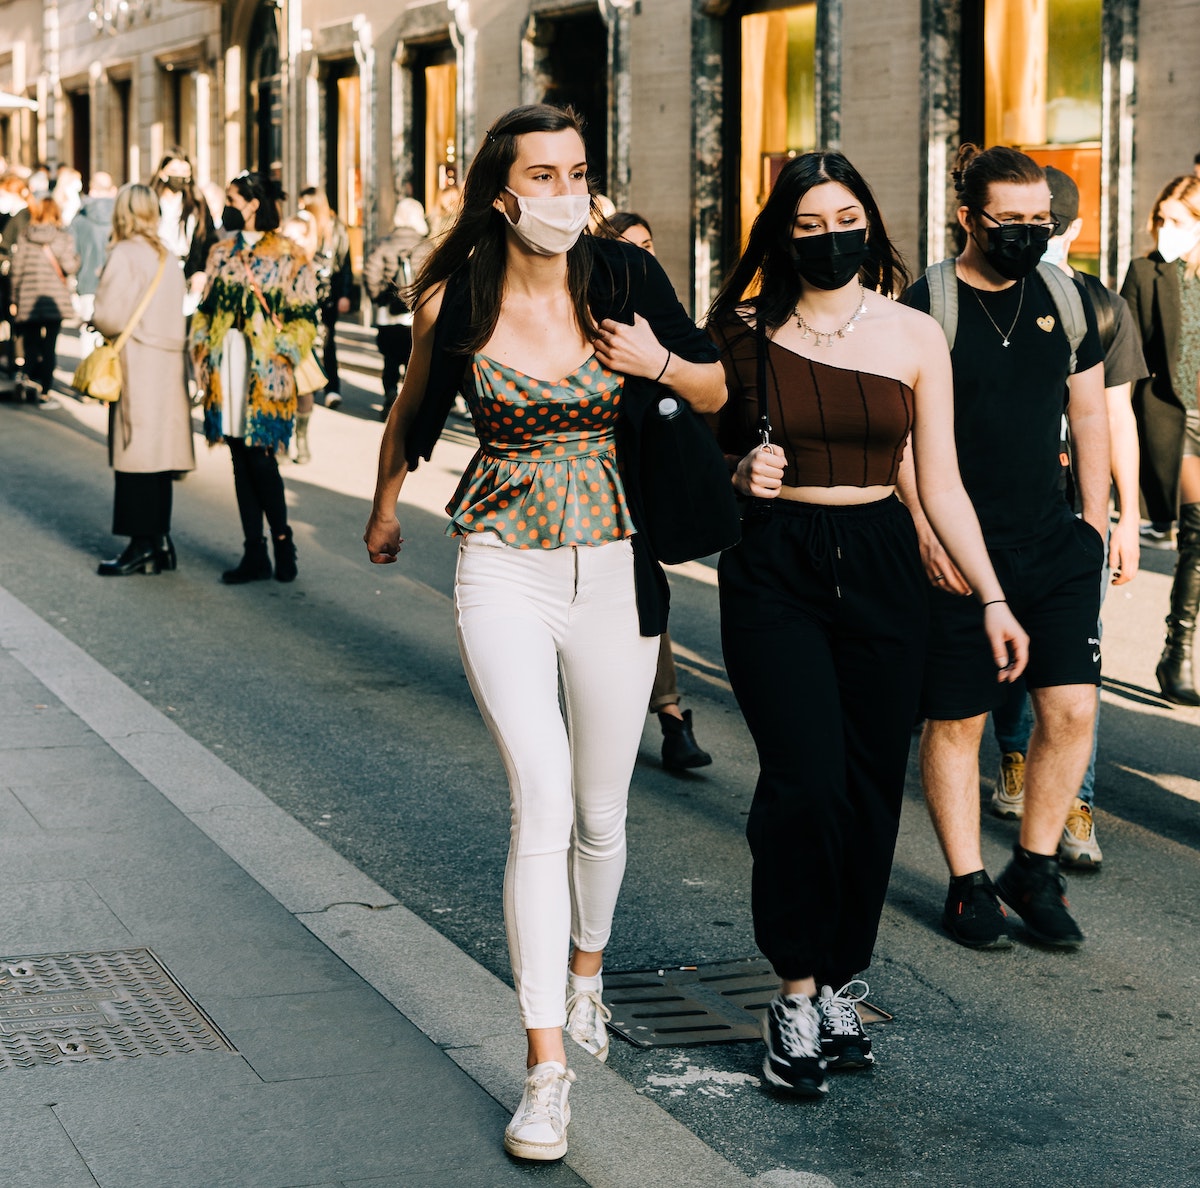 イタリア、道を歩く女性、マスク姿、イタリア風景